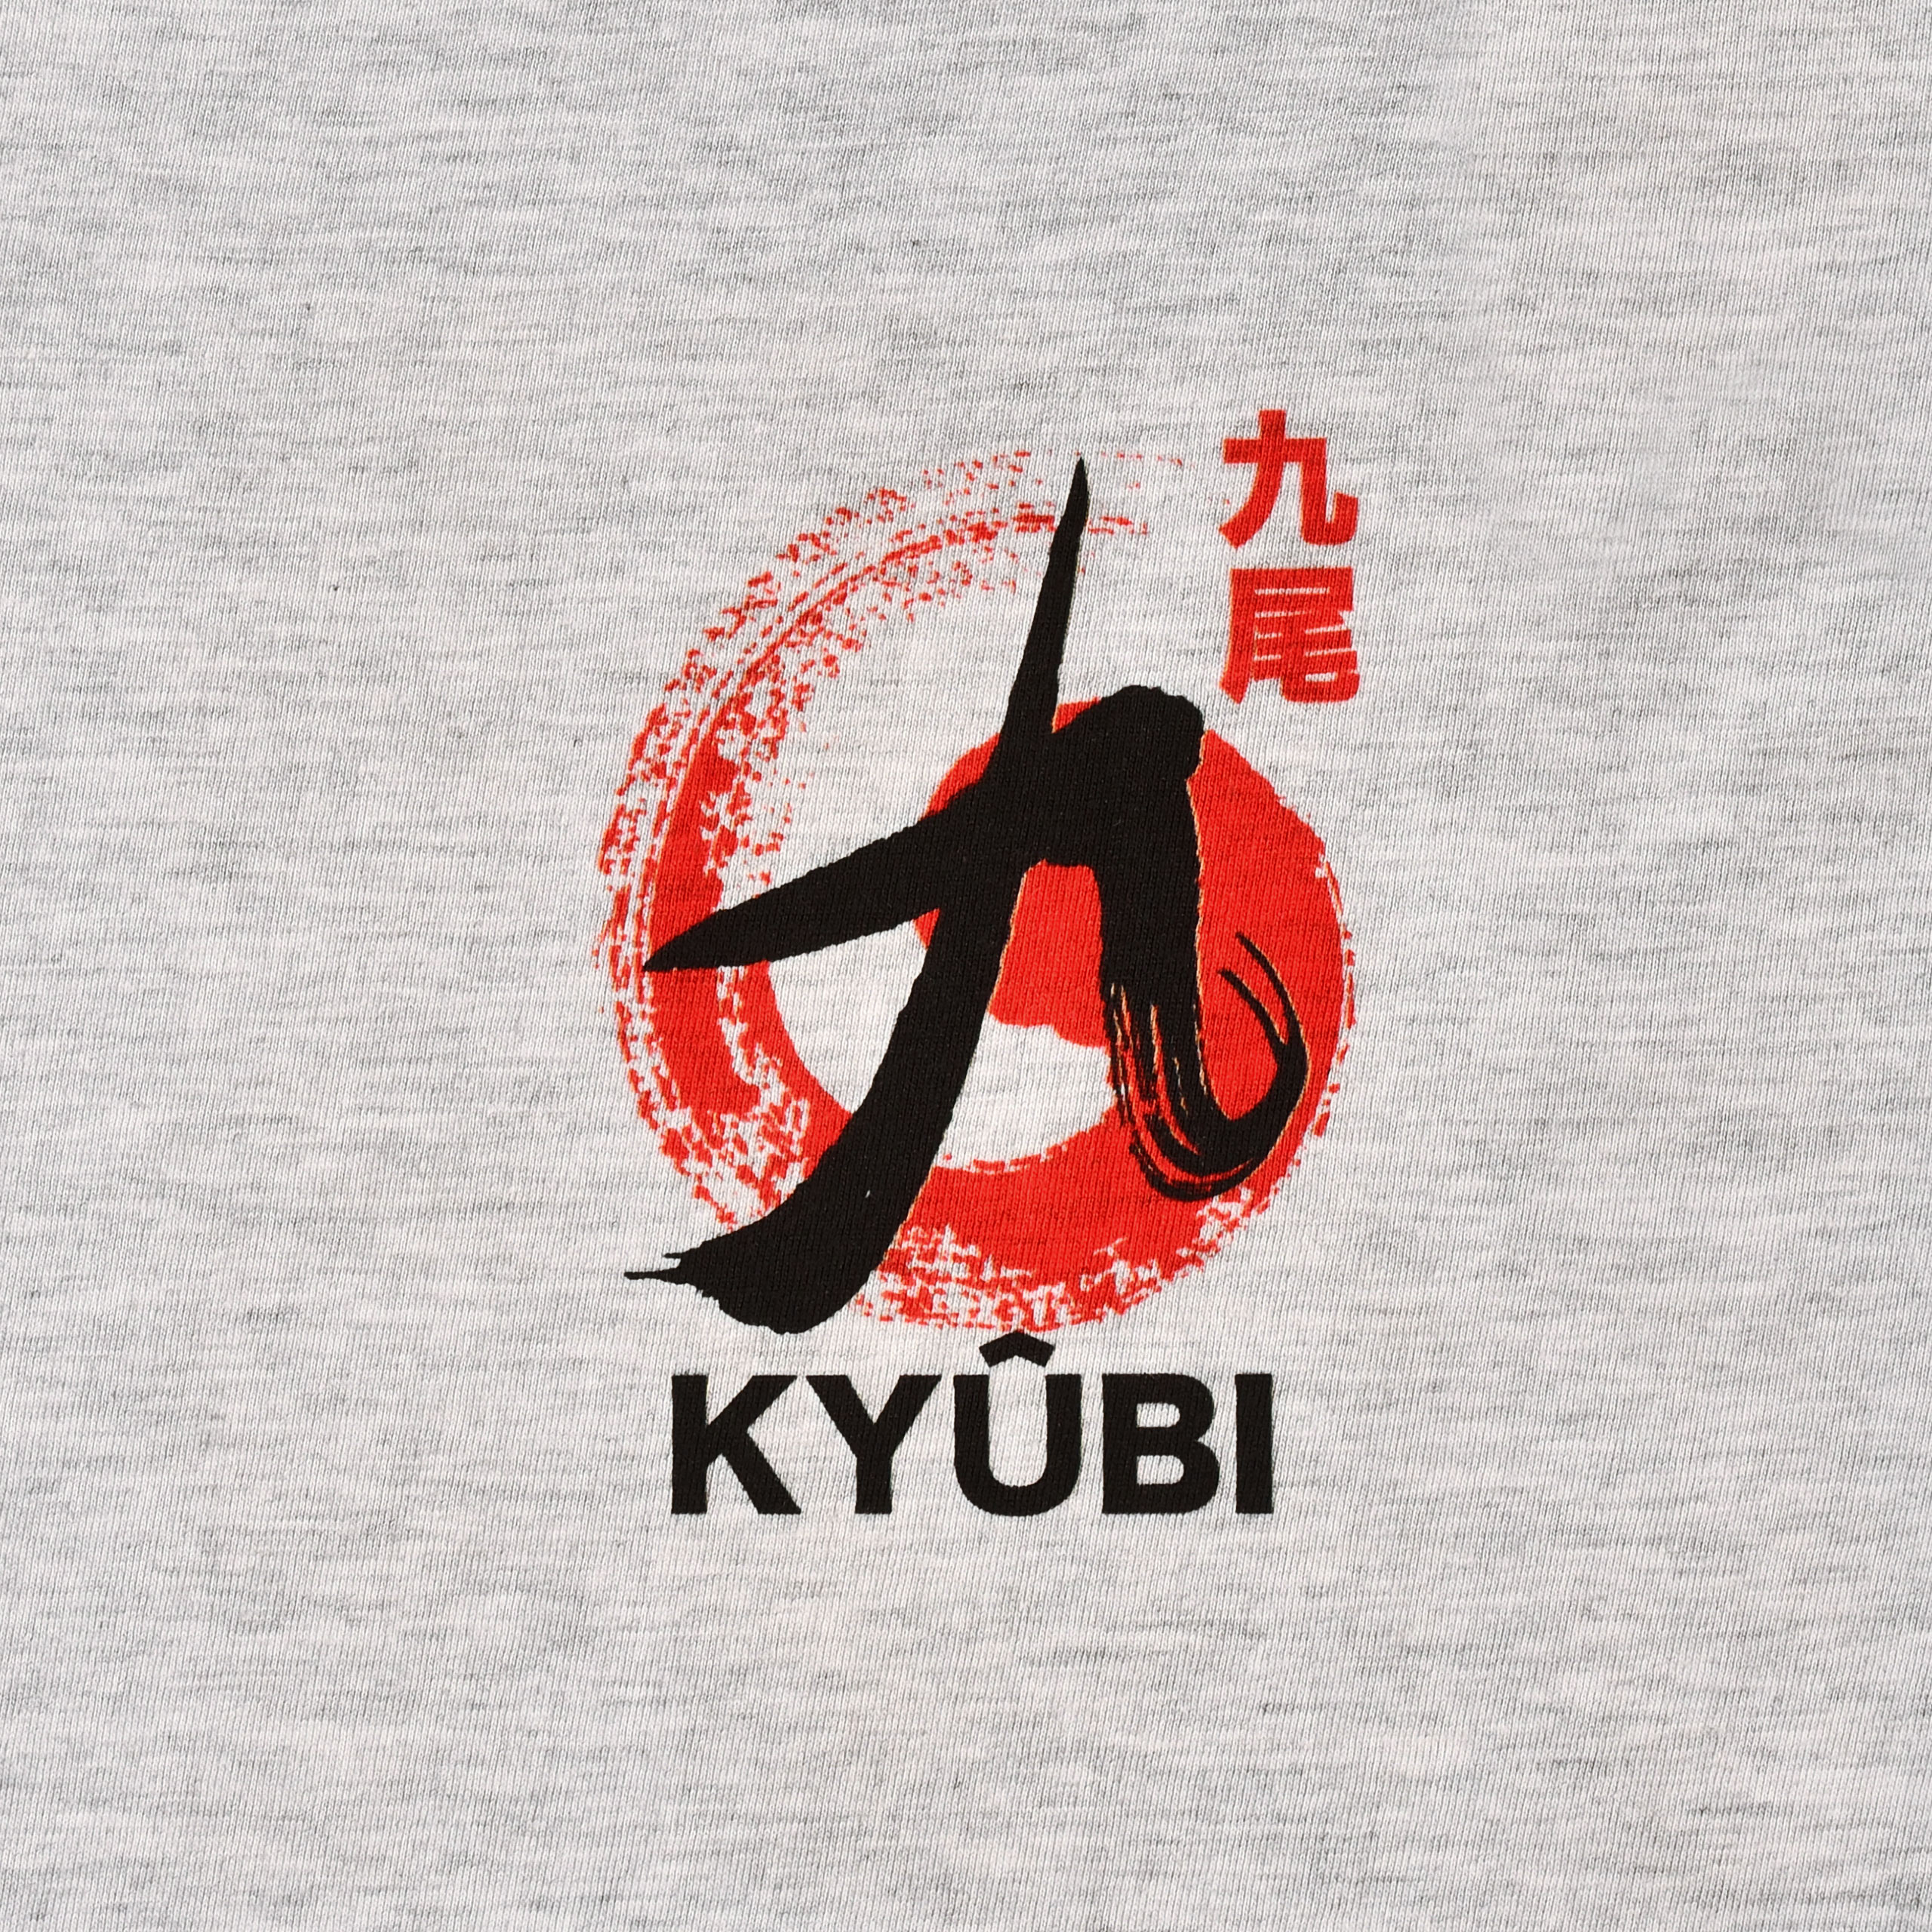 Naruto - Kyūbi T-Shirt grau